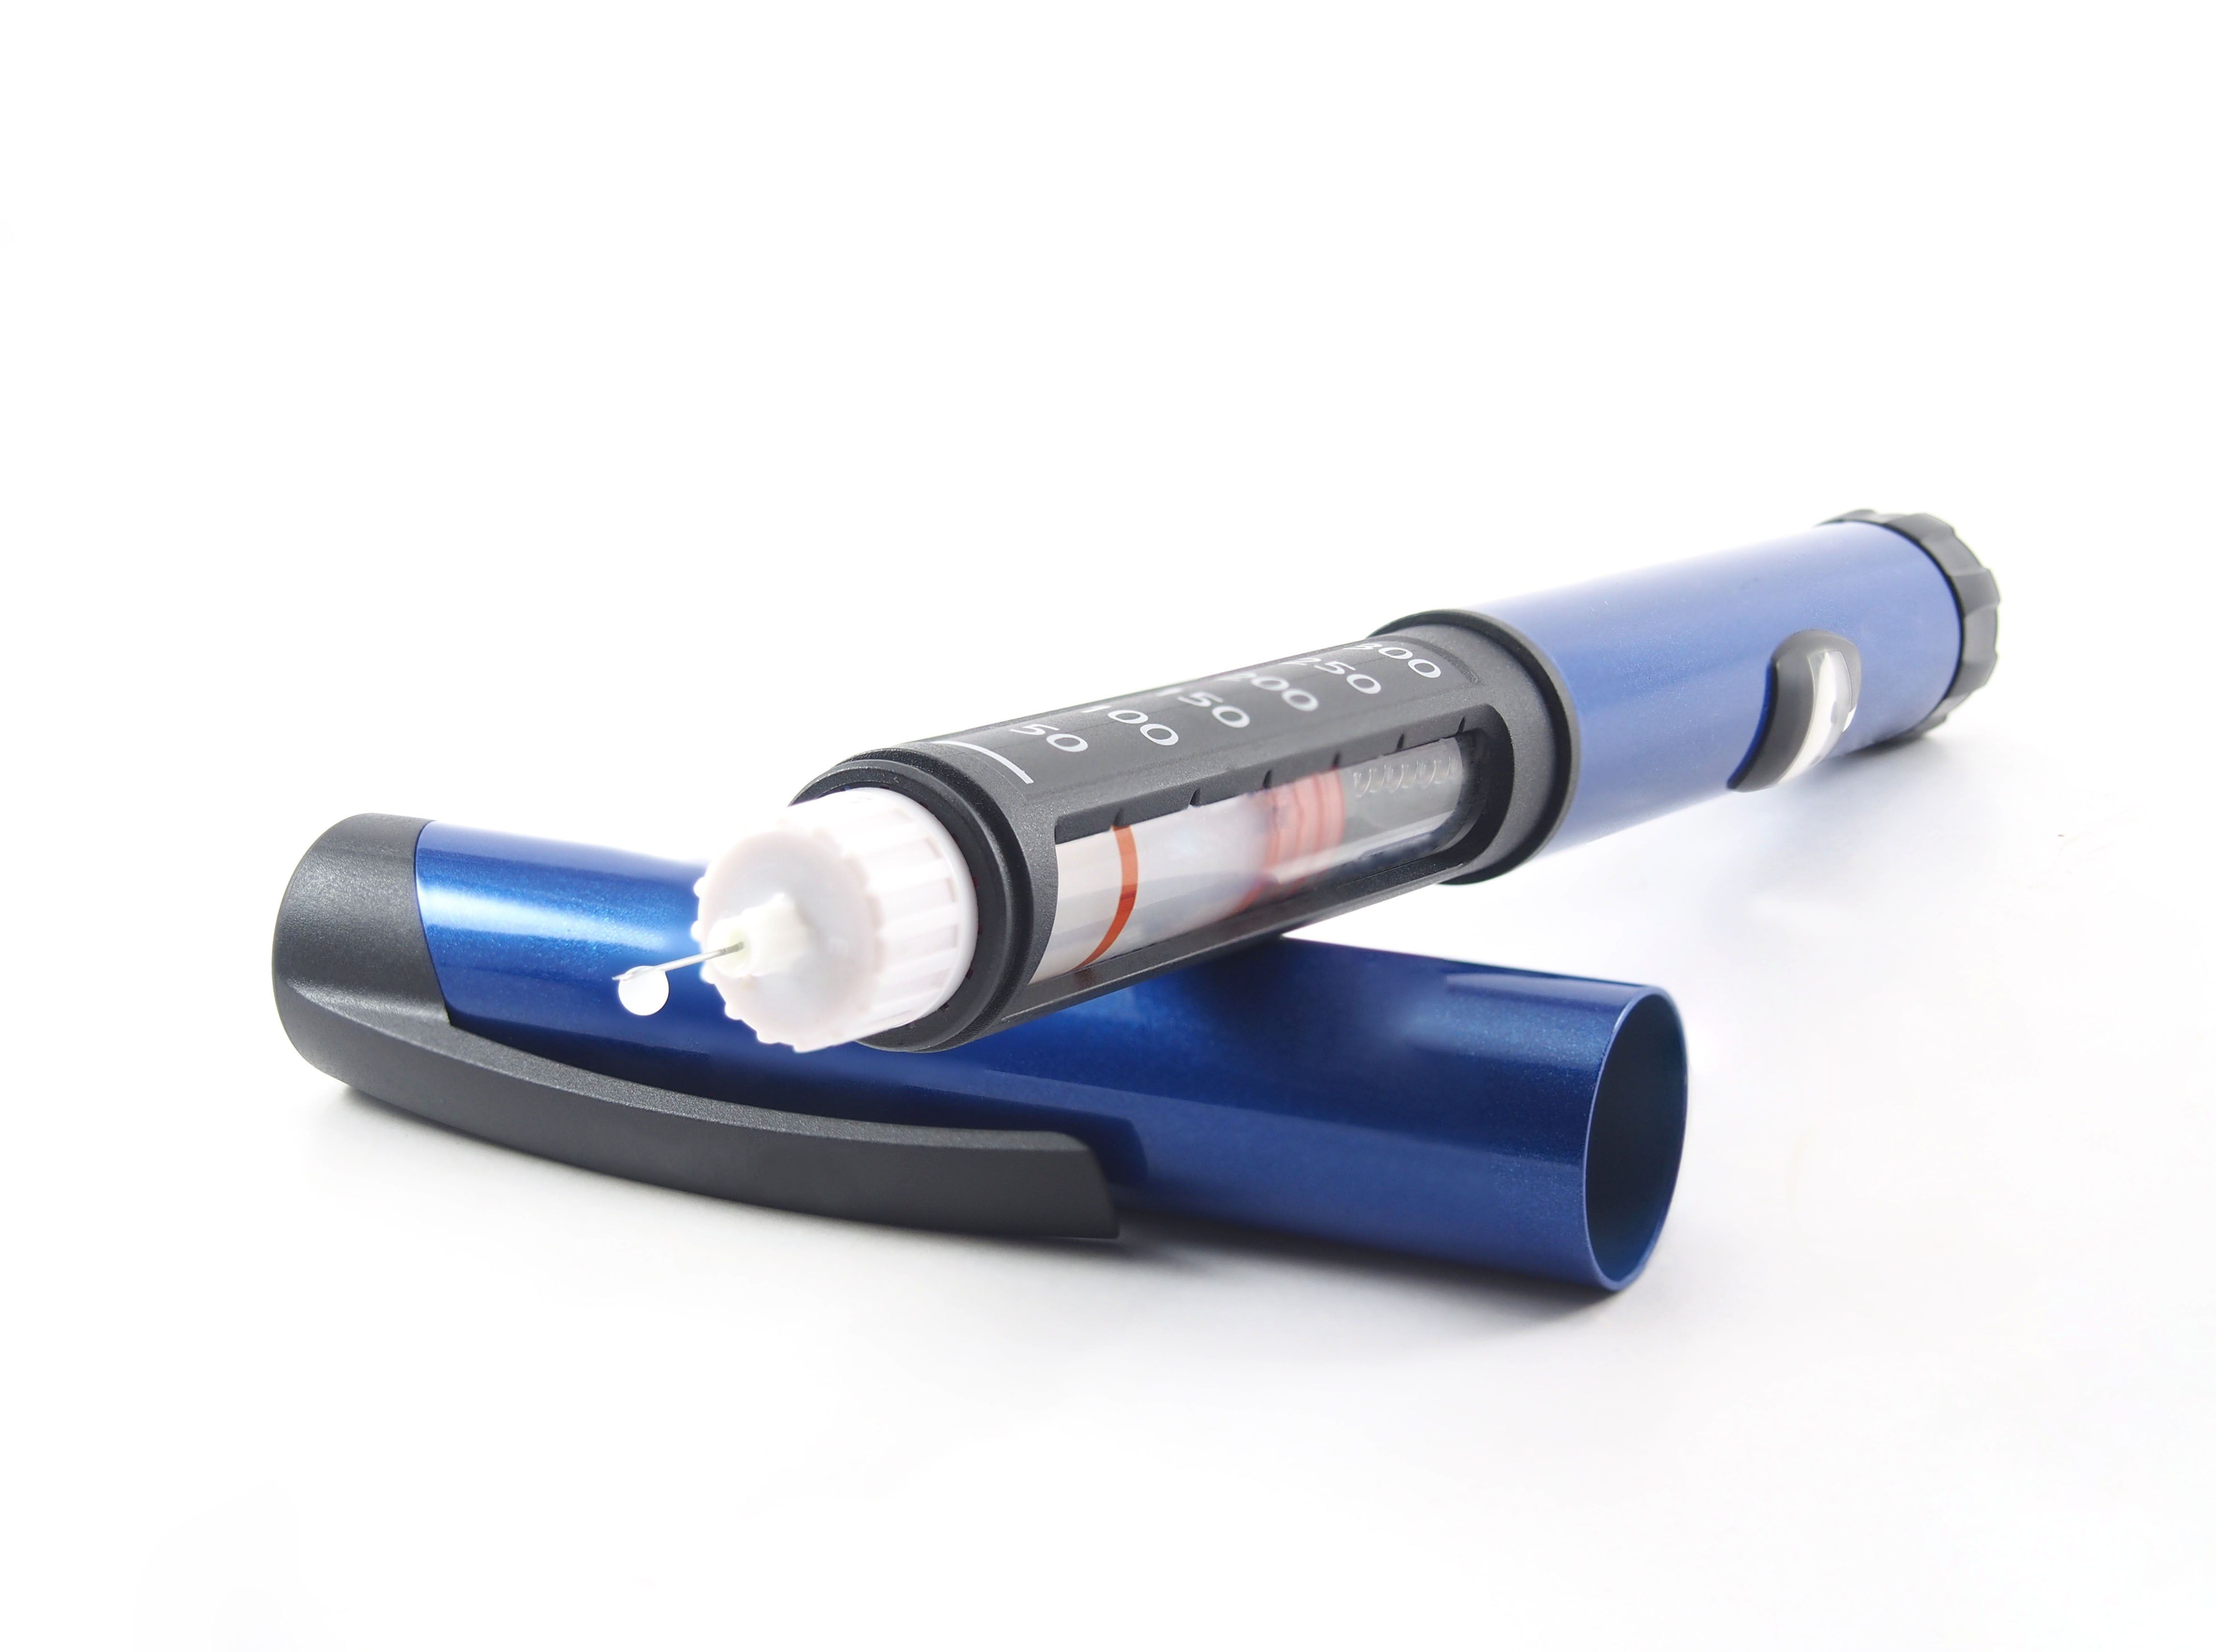 Injector Pens | Medical Applications